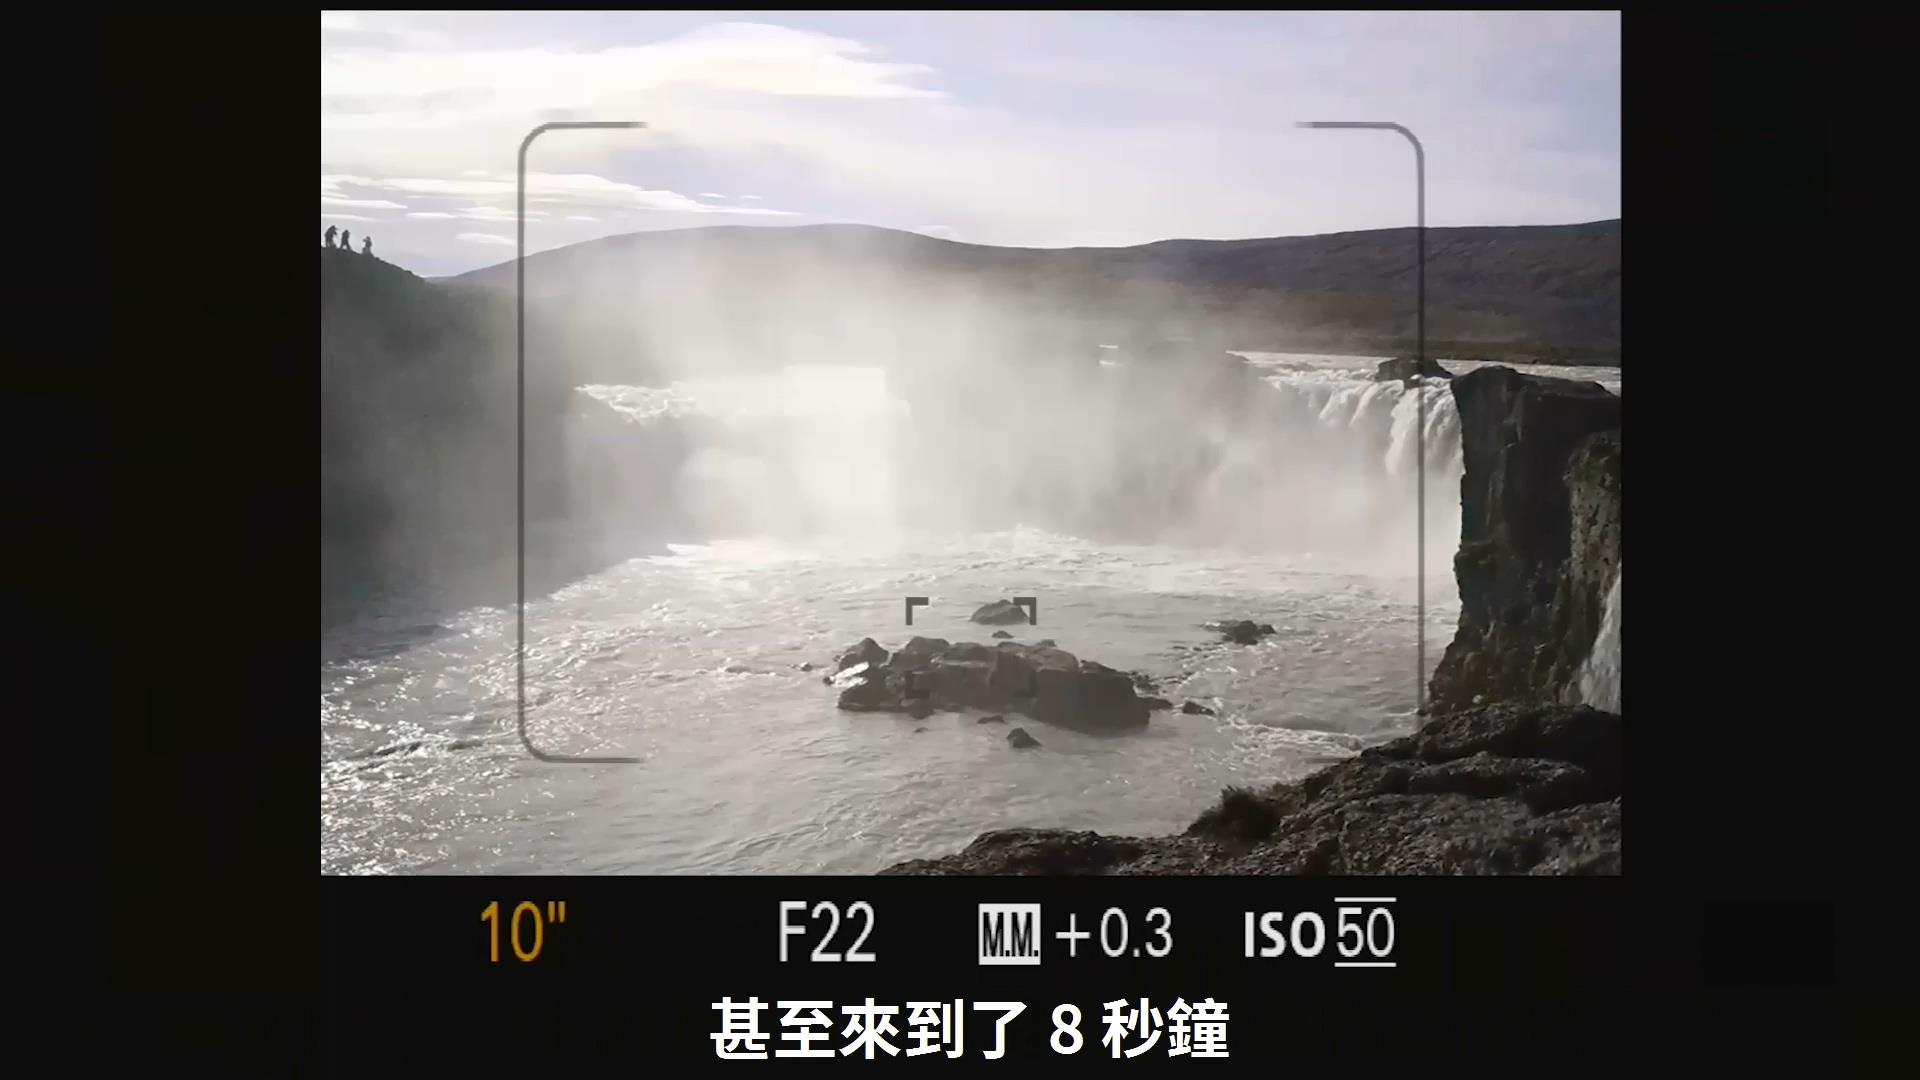 [用攝影111] 如何拍攝瀑布 ? 面對瀑布、流水拍出棉密狀，採用 ND 減光鏡來使用